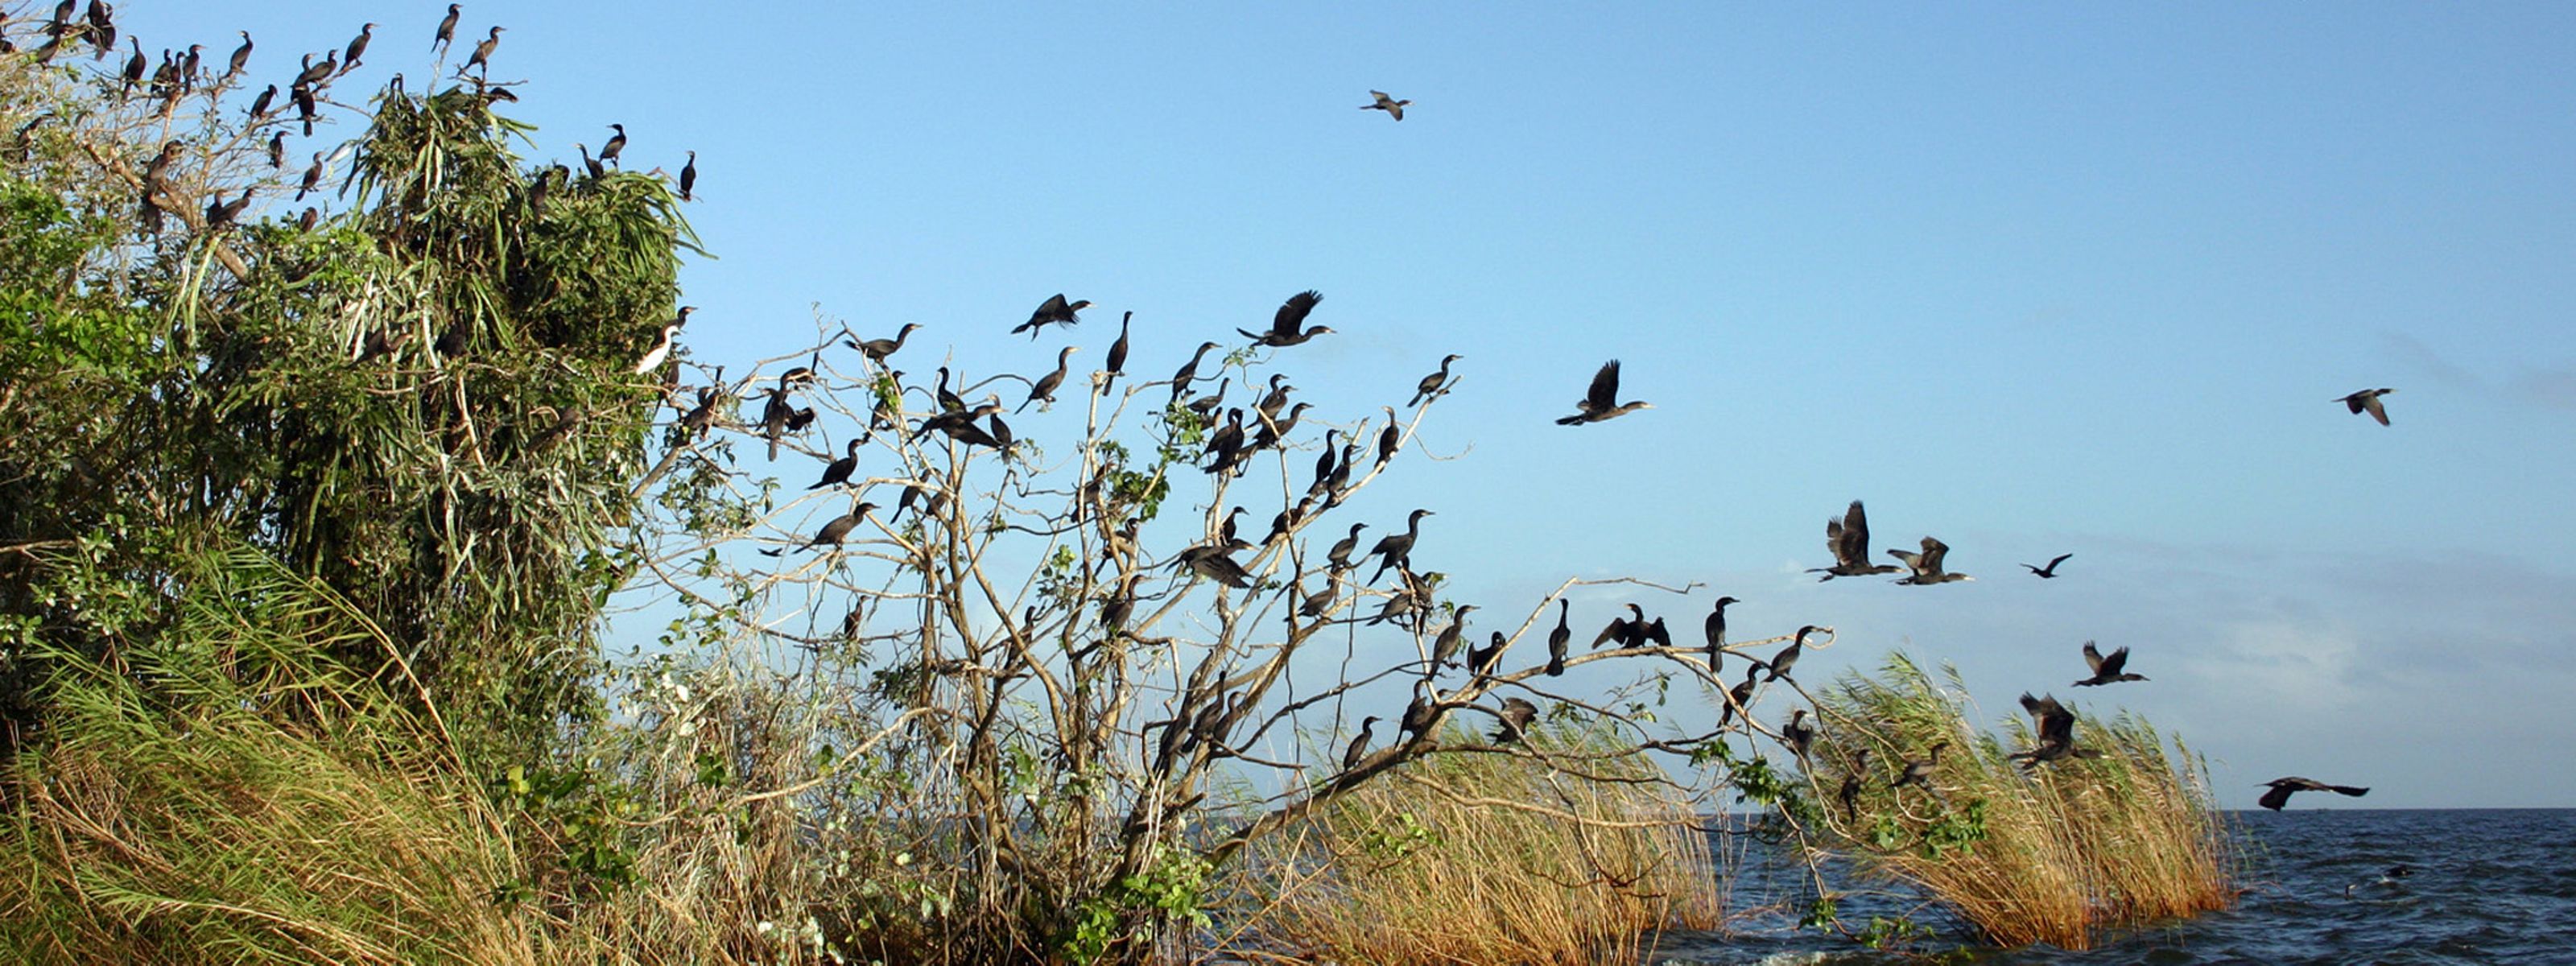 Cormorant birds in Nicaragua